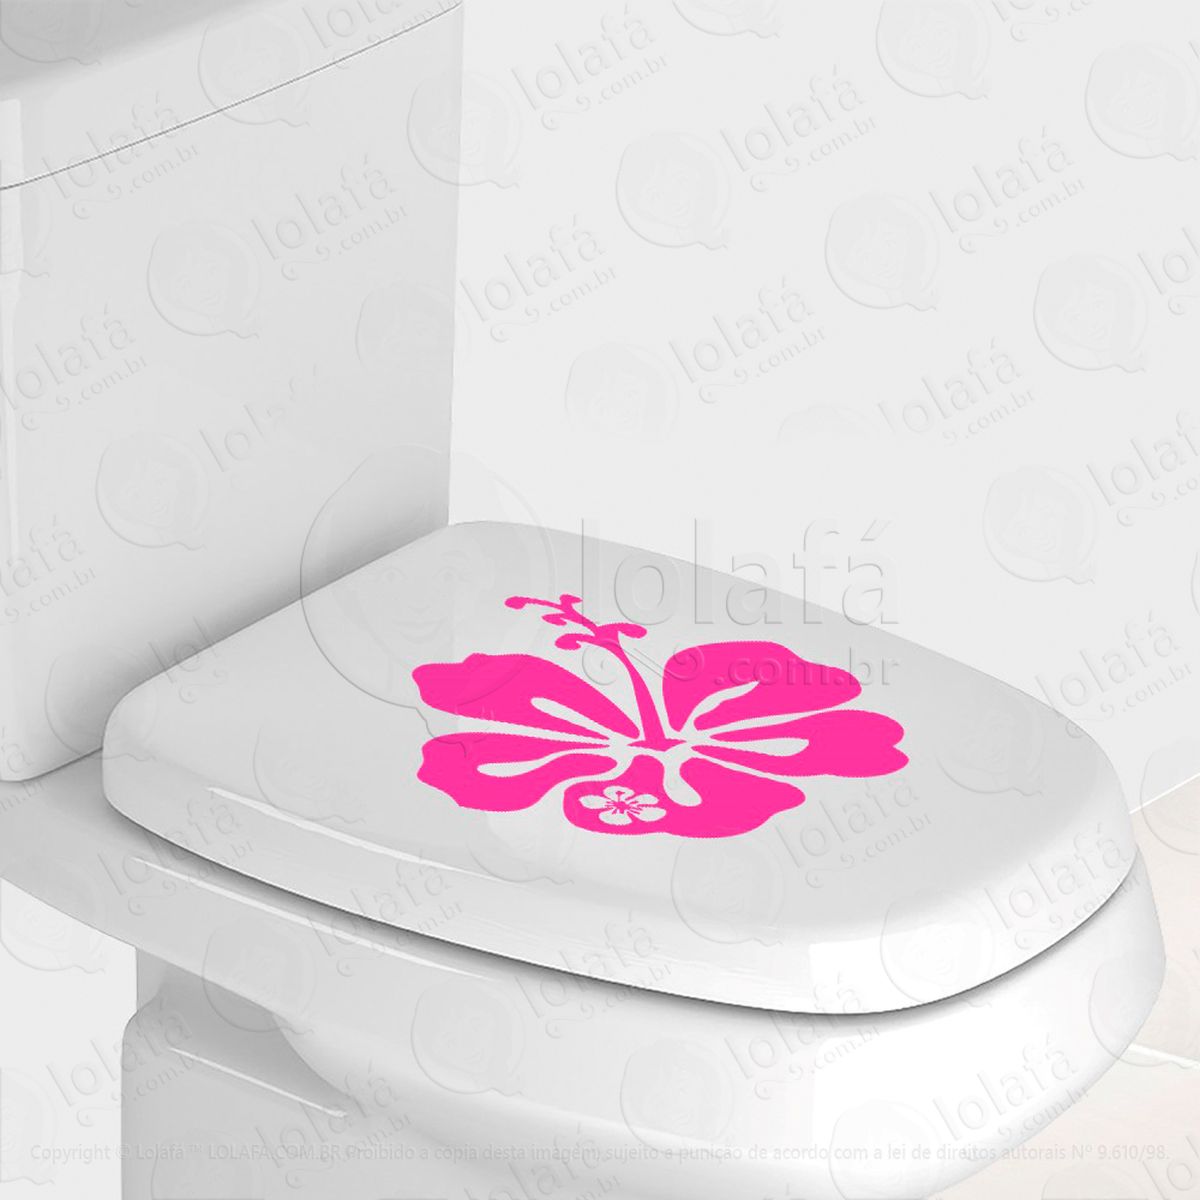 flor adesivo para vaso sanitário e privada - mod:90